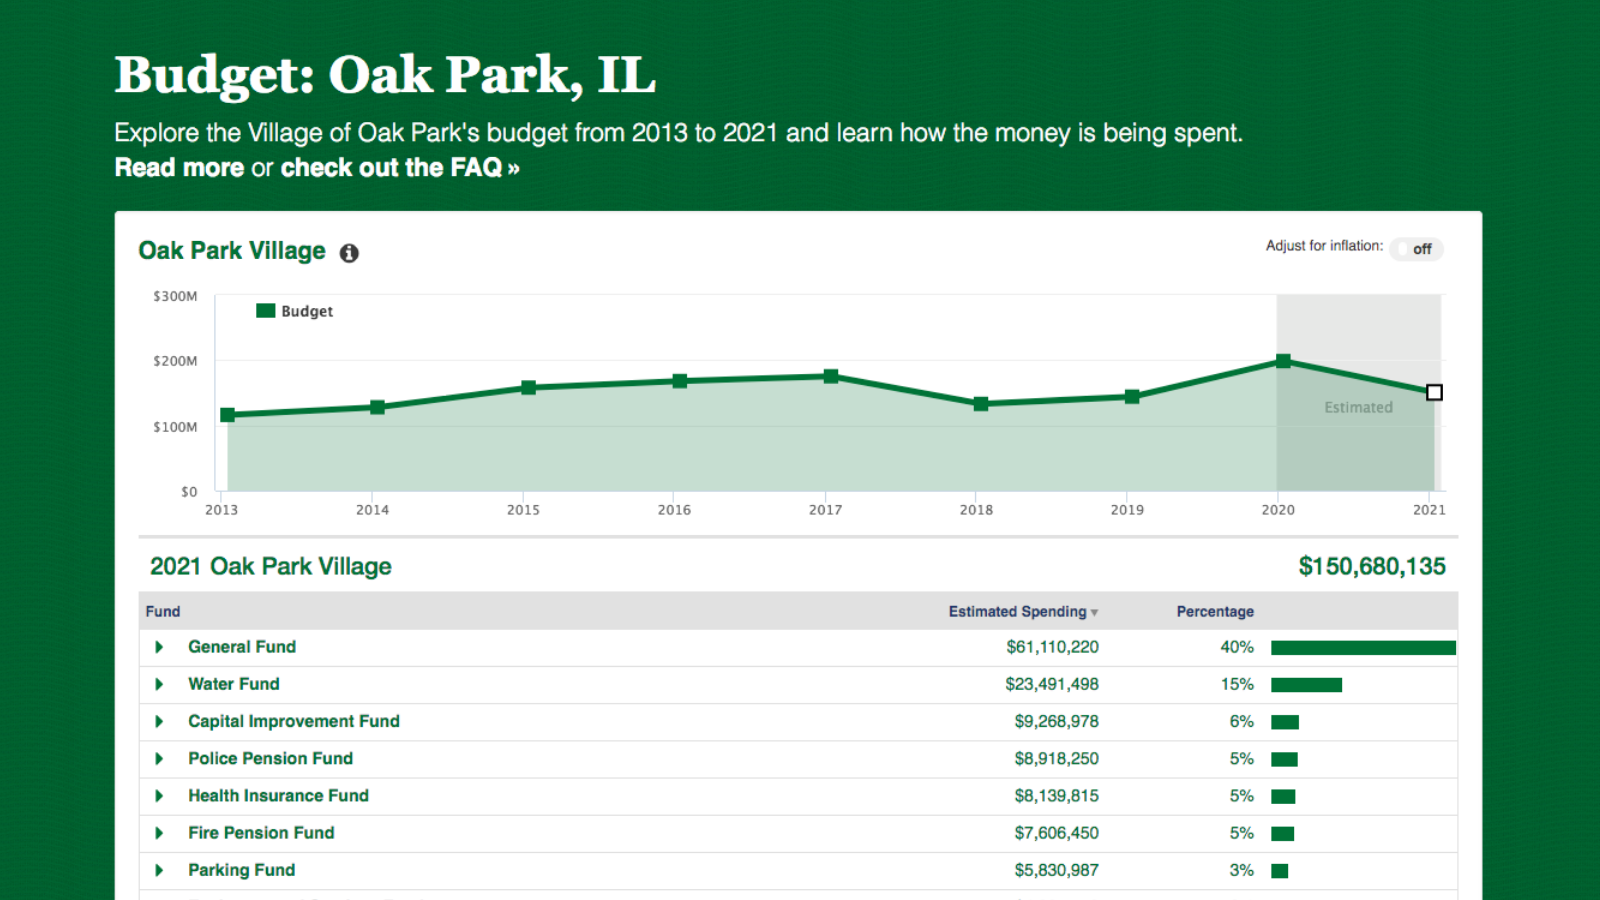 Budget: Oak Park